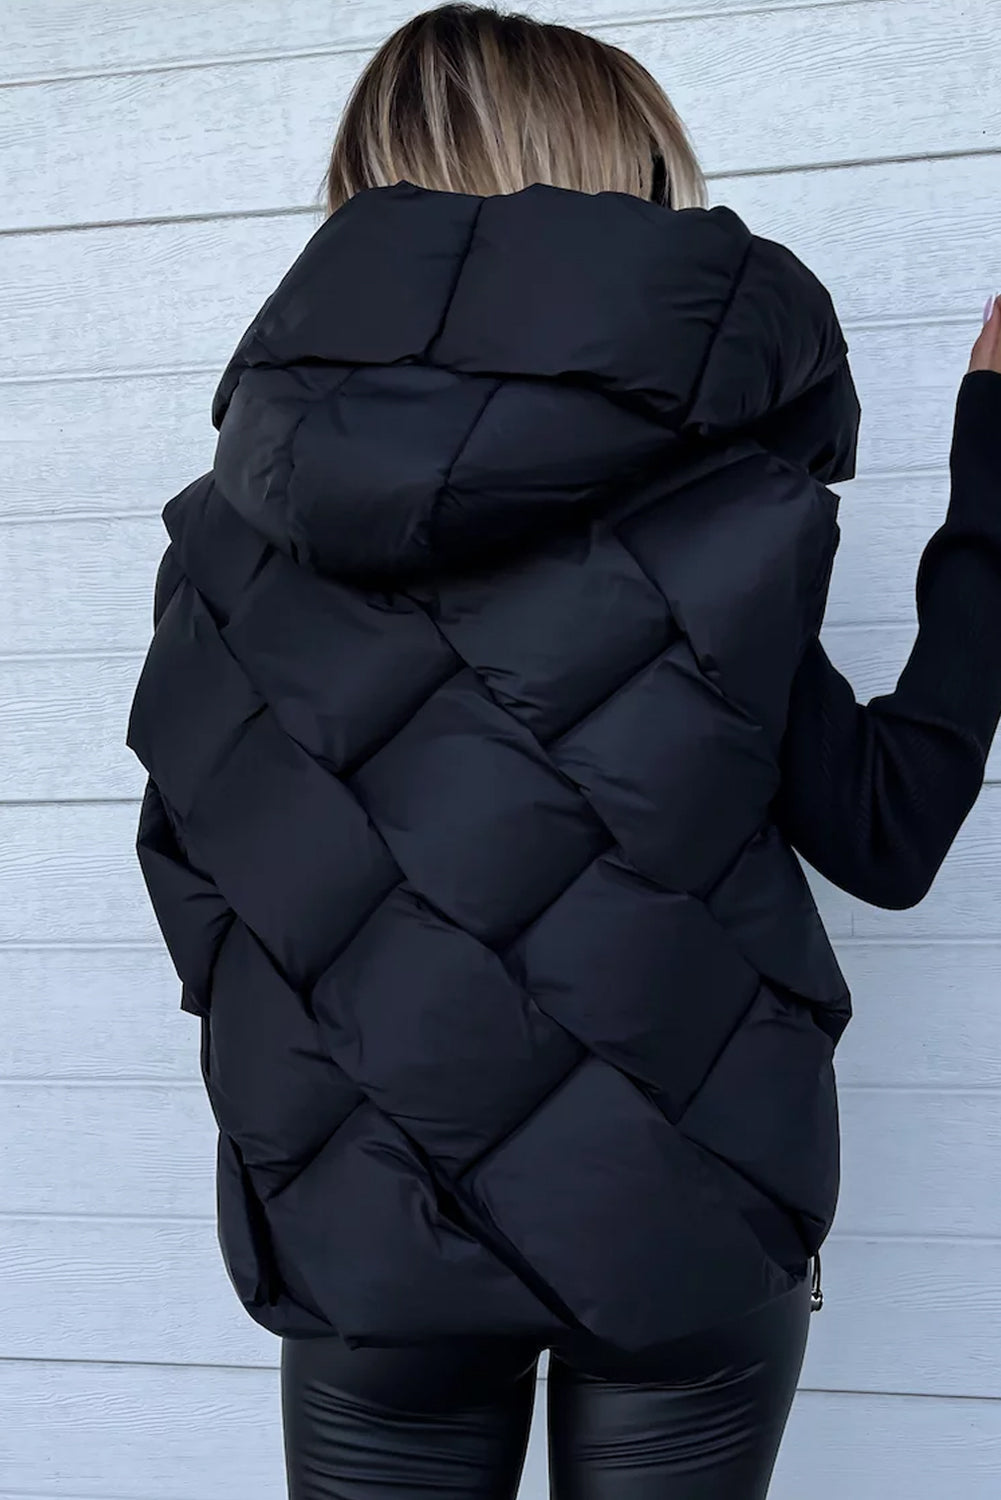 Manteau noir matelassé à capuche et fermeture éclair sur le devant